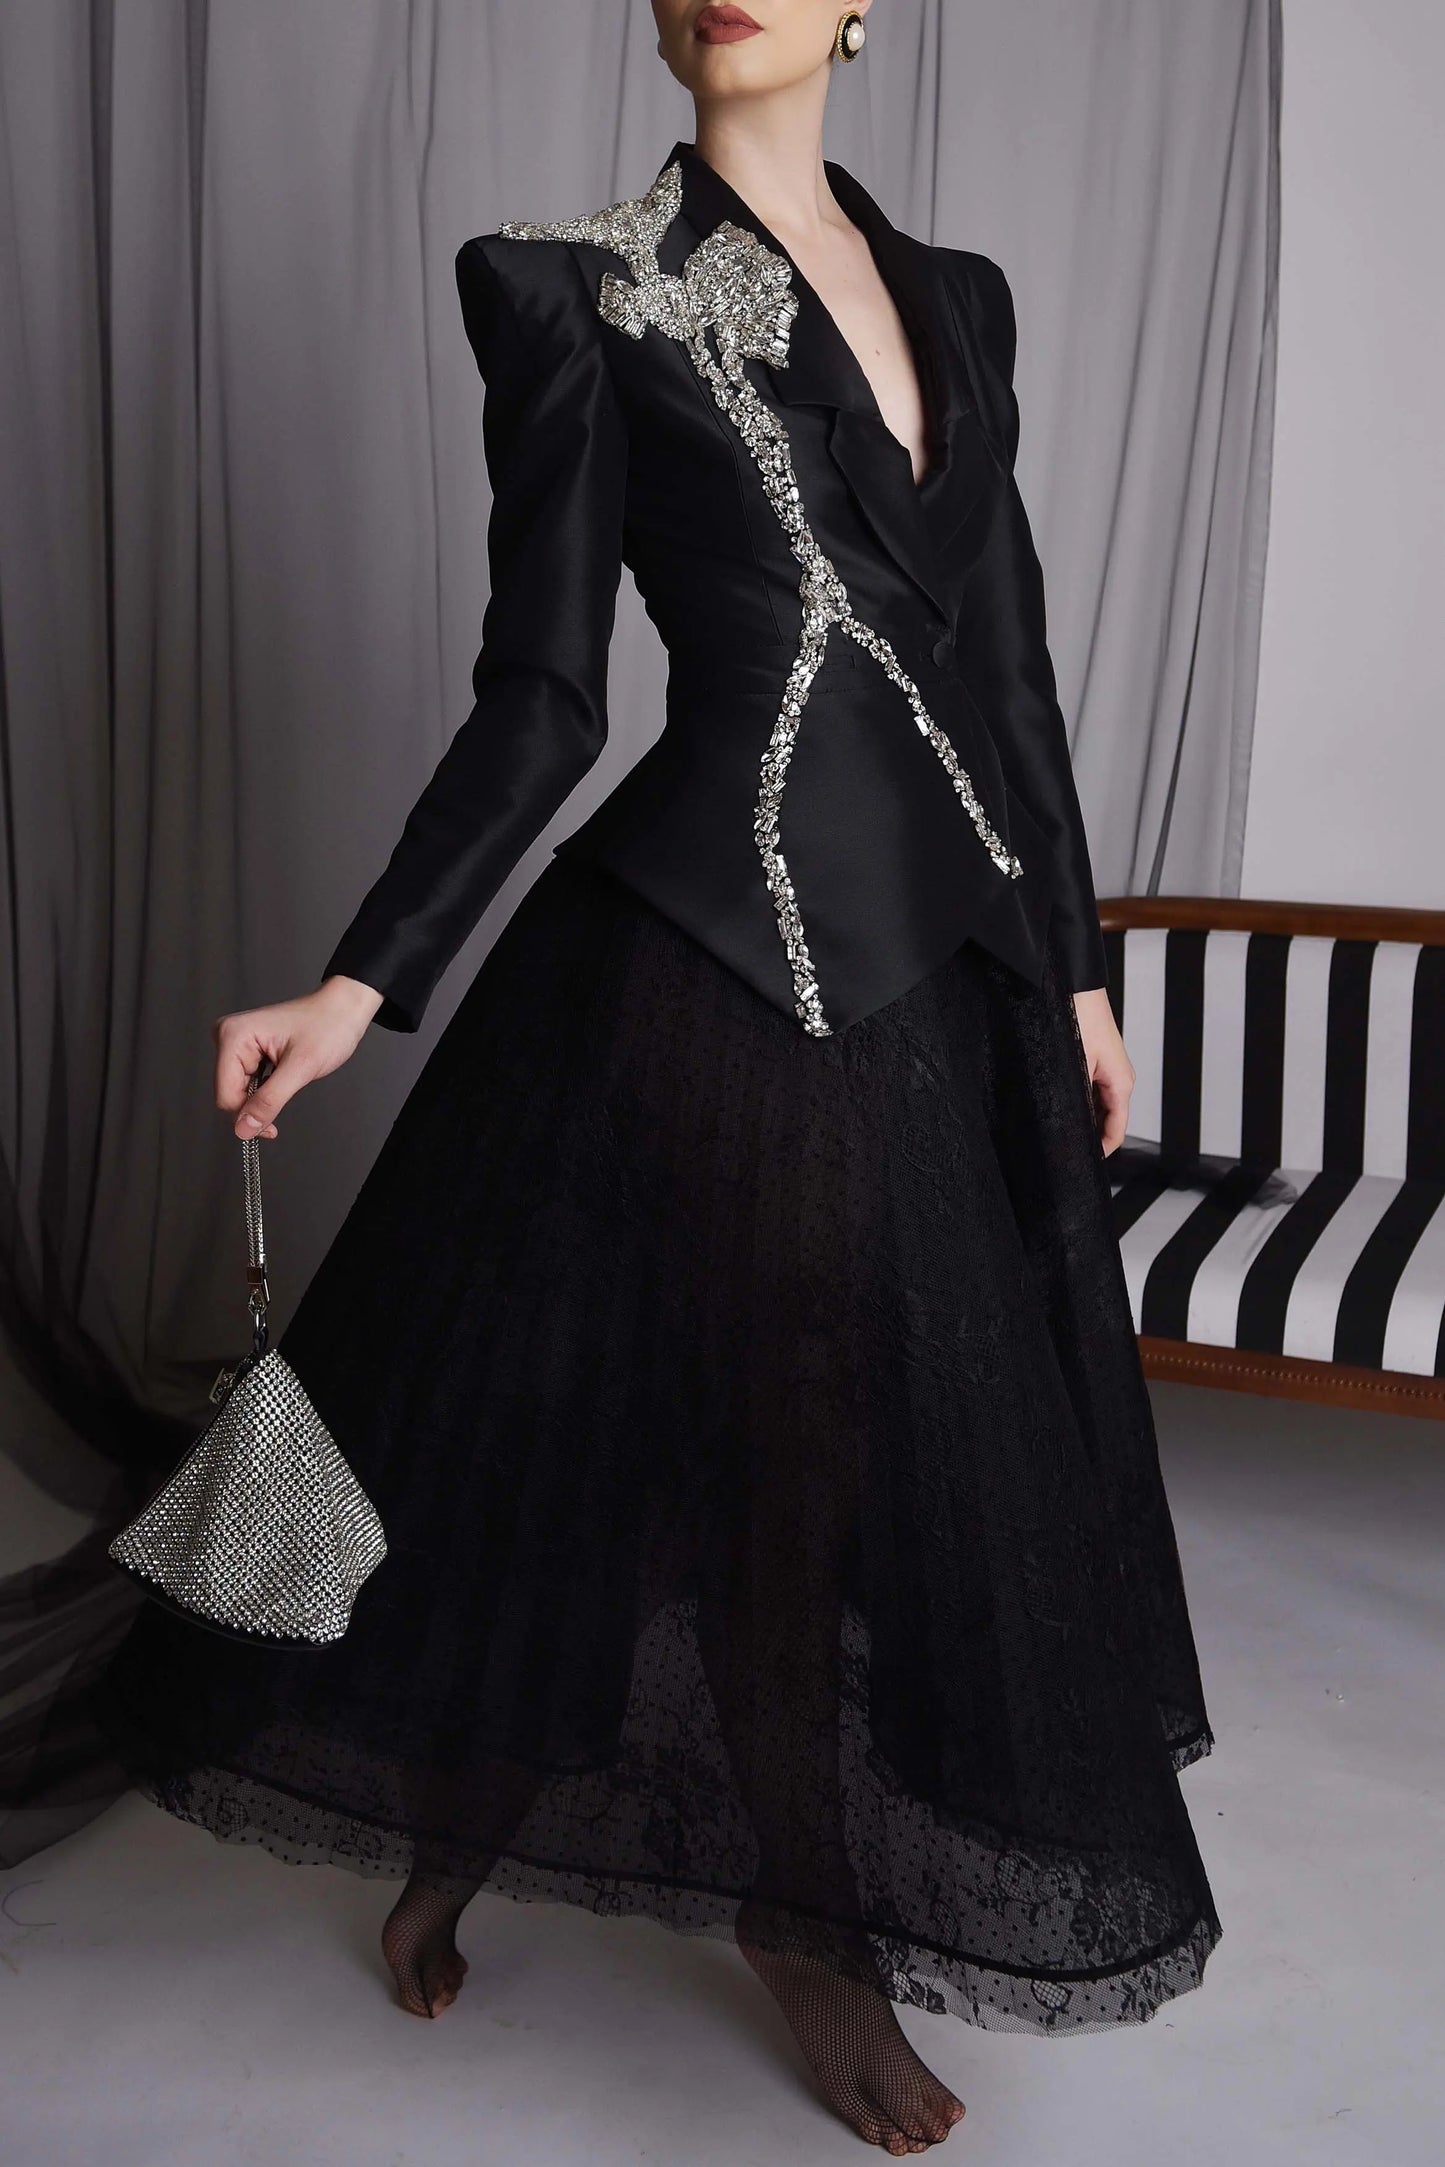 Costum elegant cu aplicatie de pietre Lalea  Araftu Couture